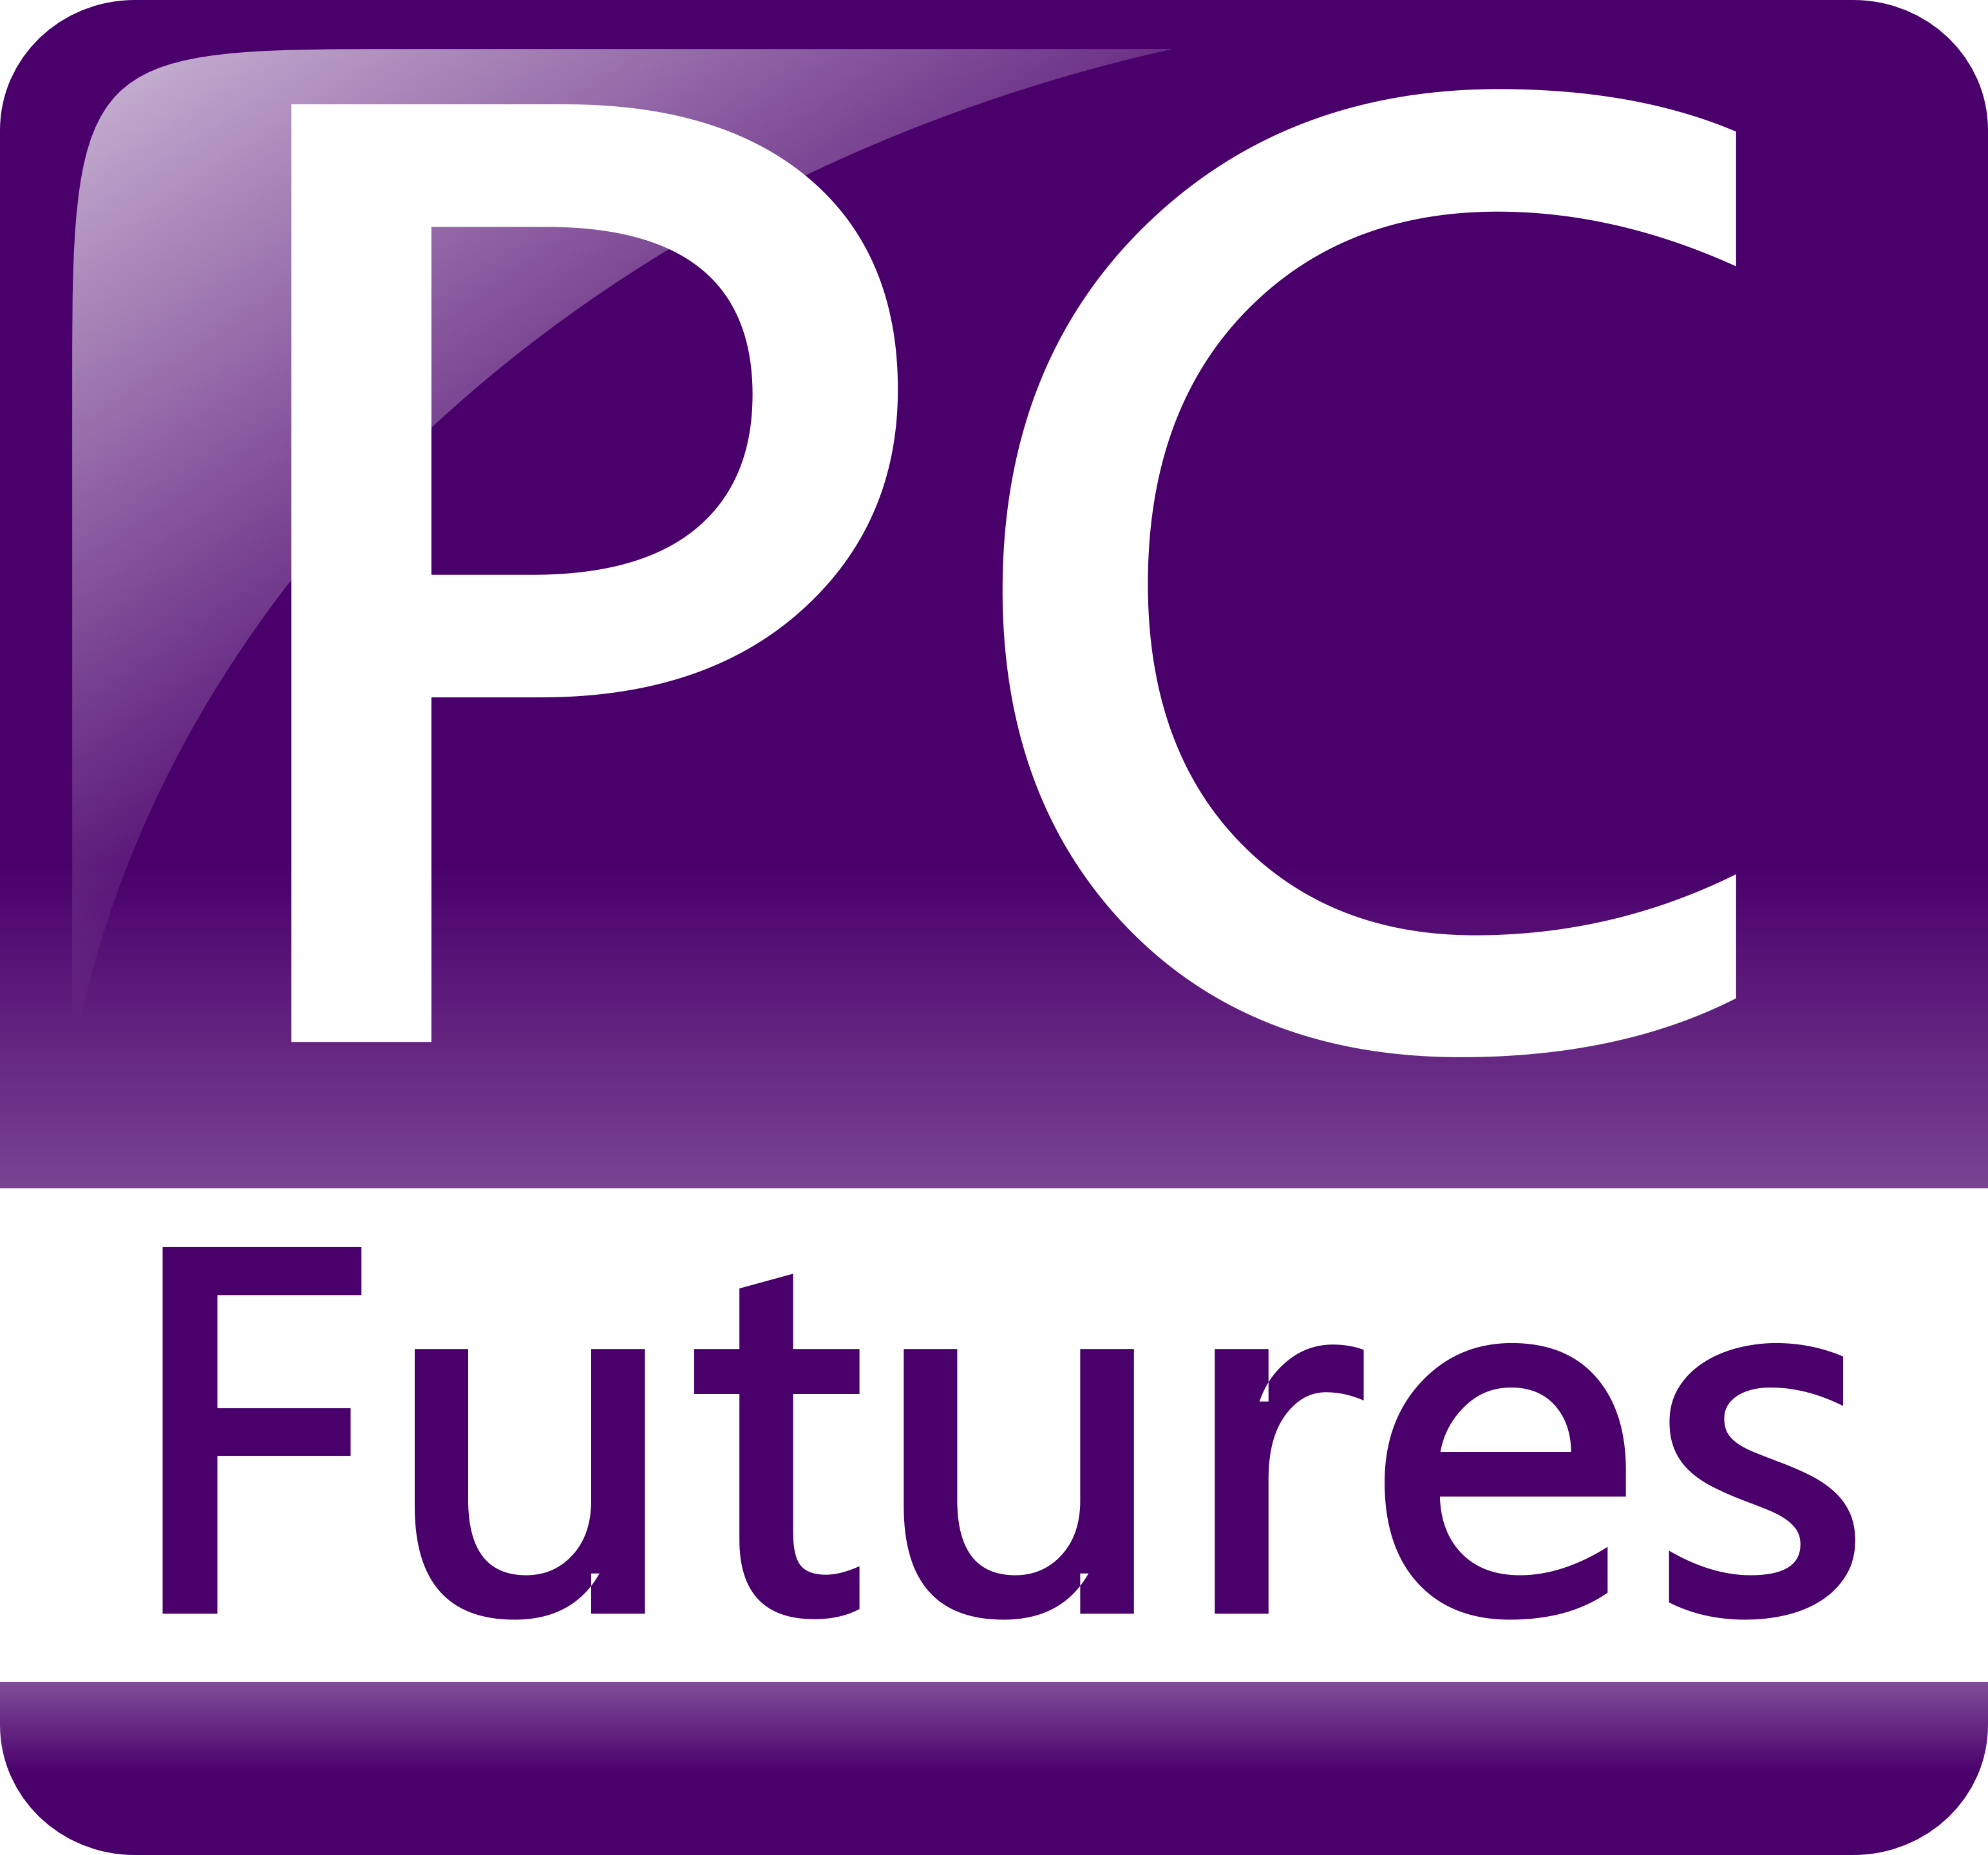 PC Futures Ltd